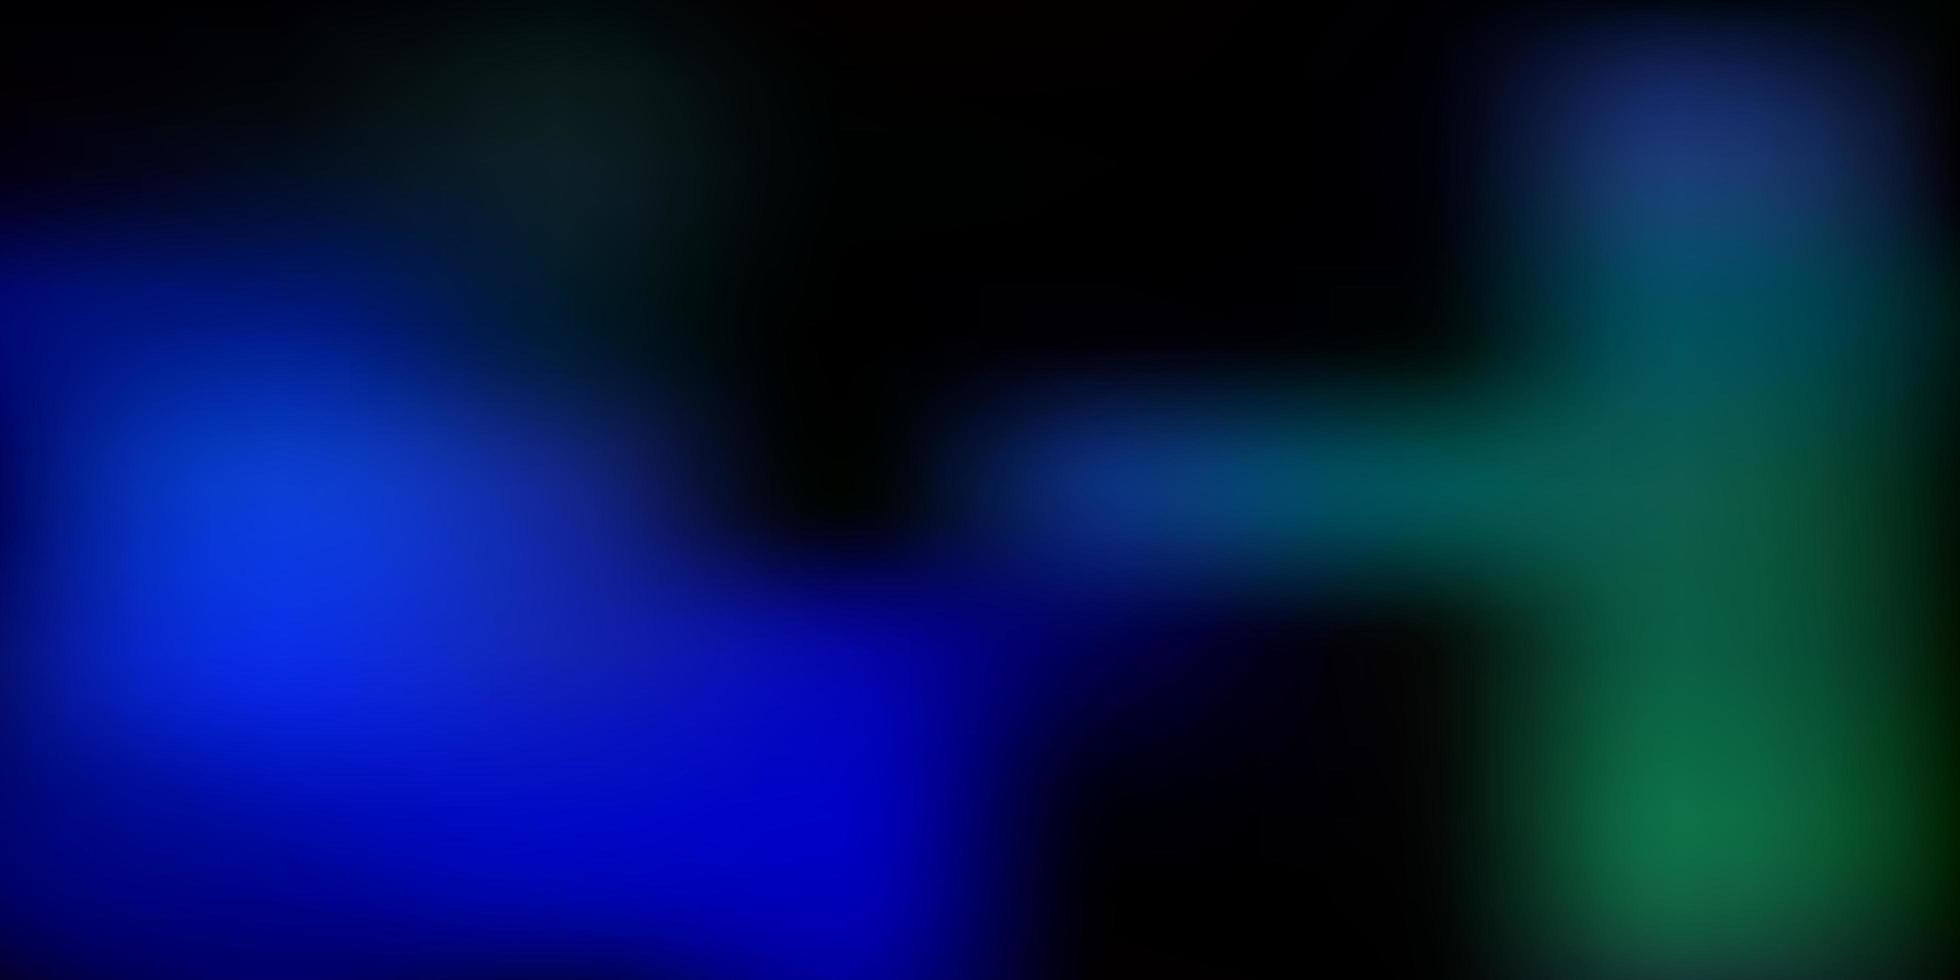 textura de desenfoque abstracto de vector azul oscuro, verde.